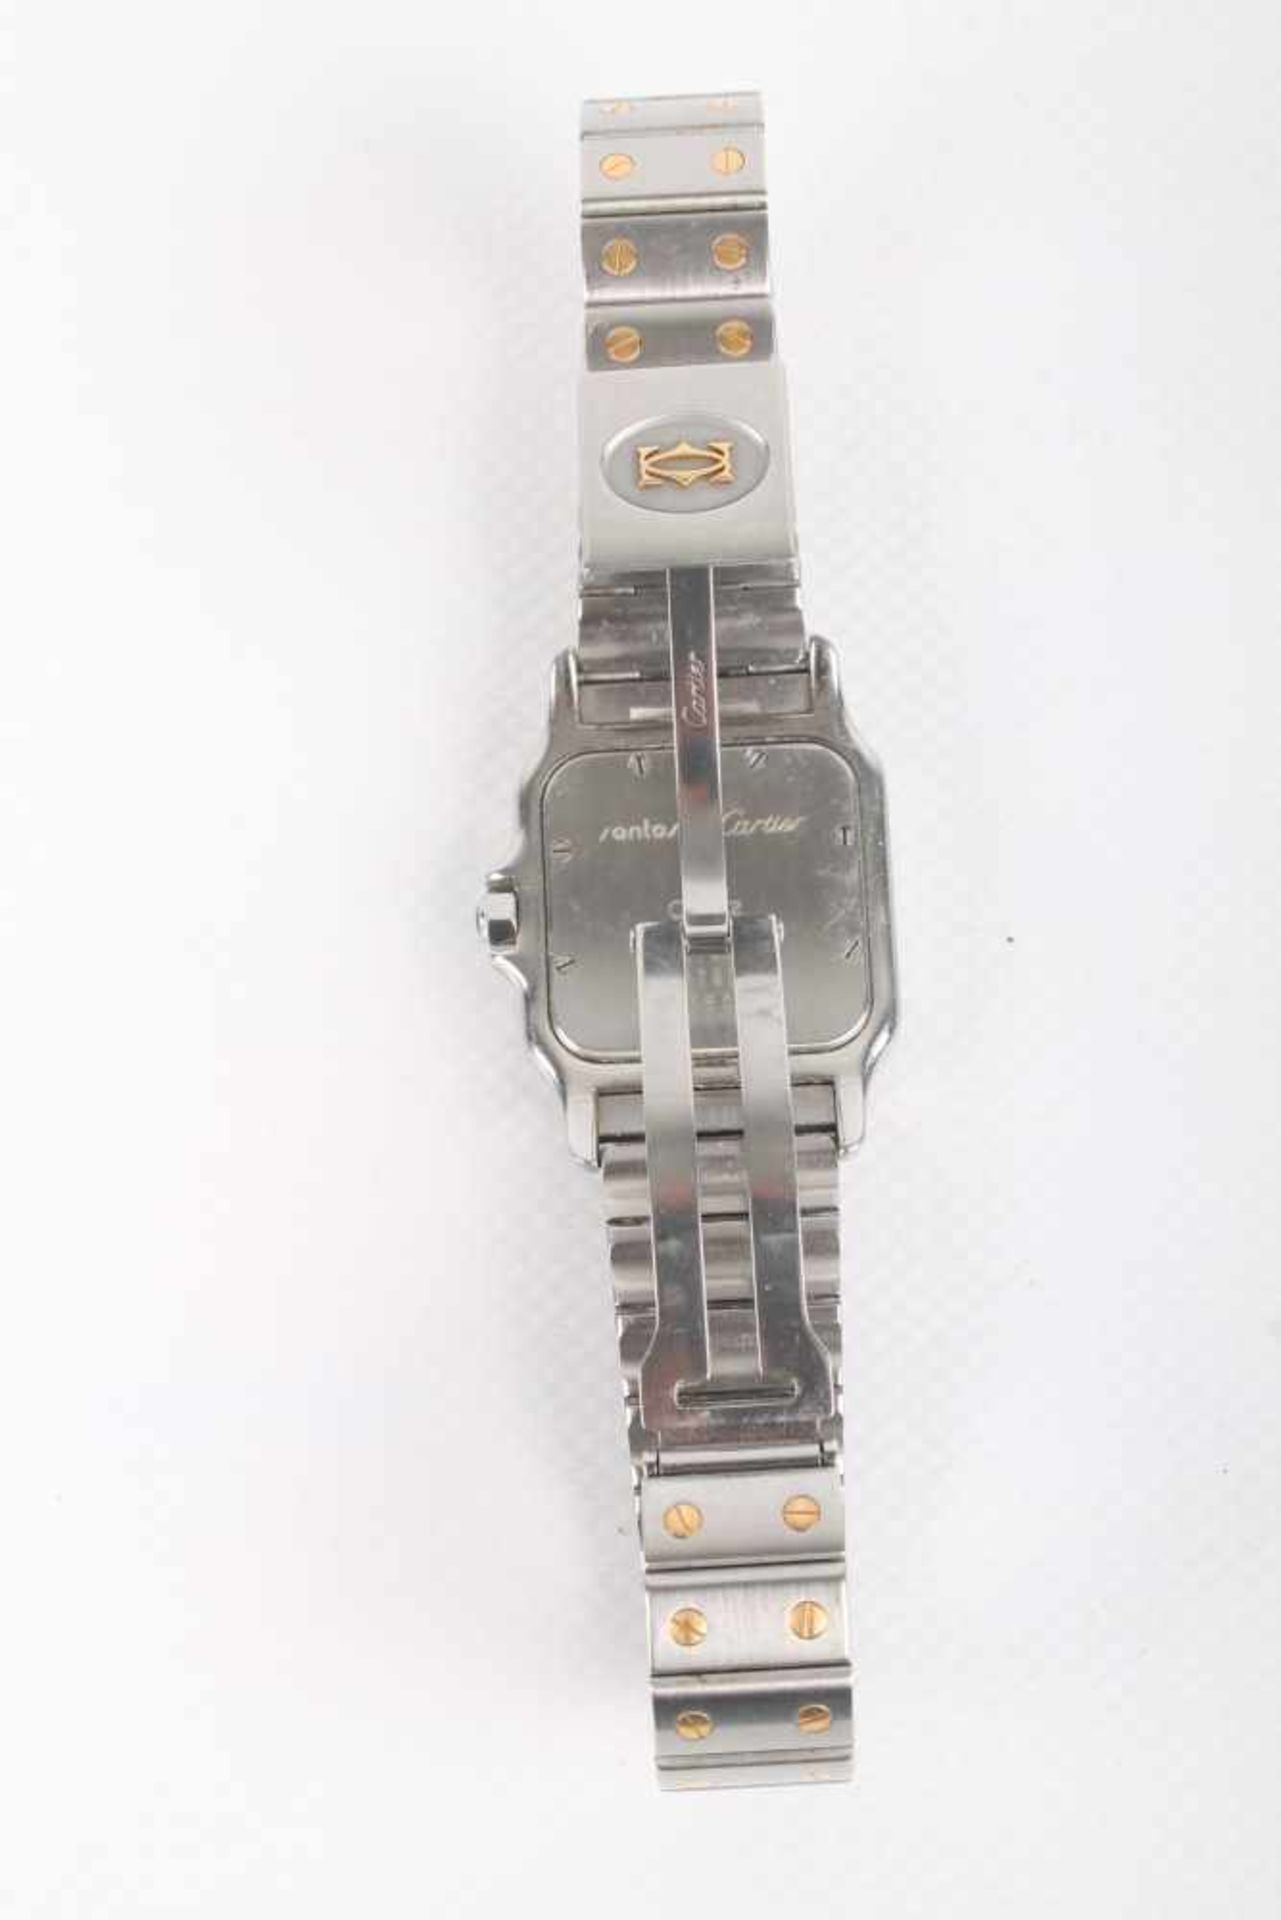 Cartier Santos Galbee Herrenuhr Armbanduhr Stahl/Gold 750, men's watch steel / 18K gold, - Bild 5 aus 7